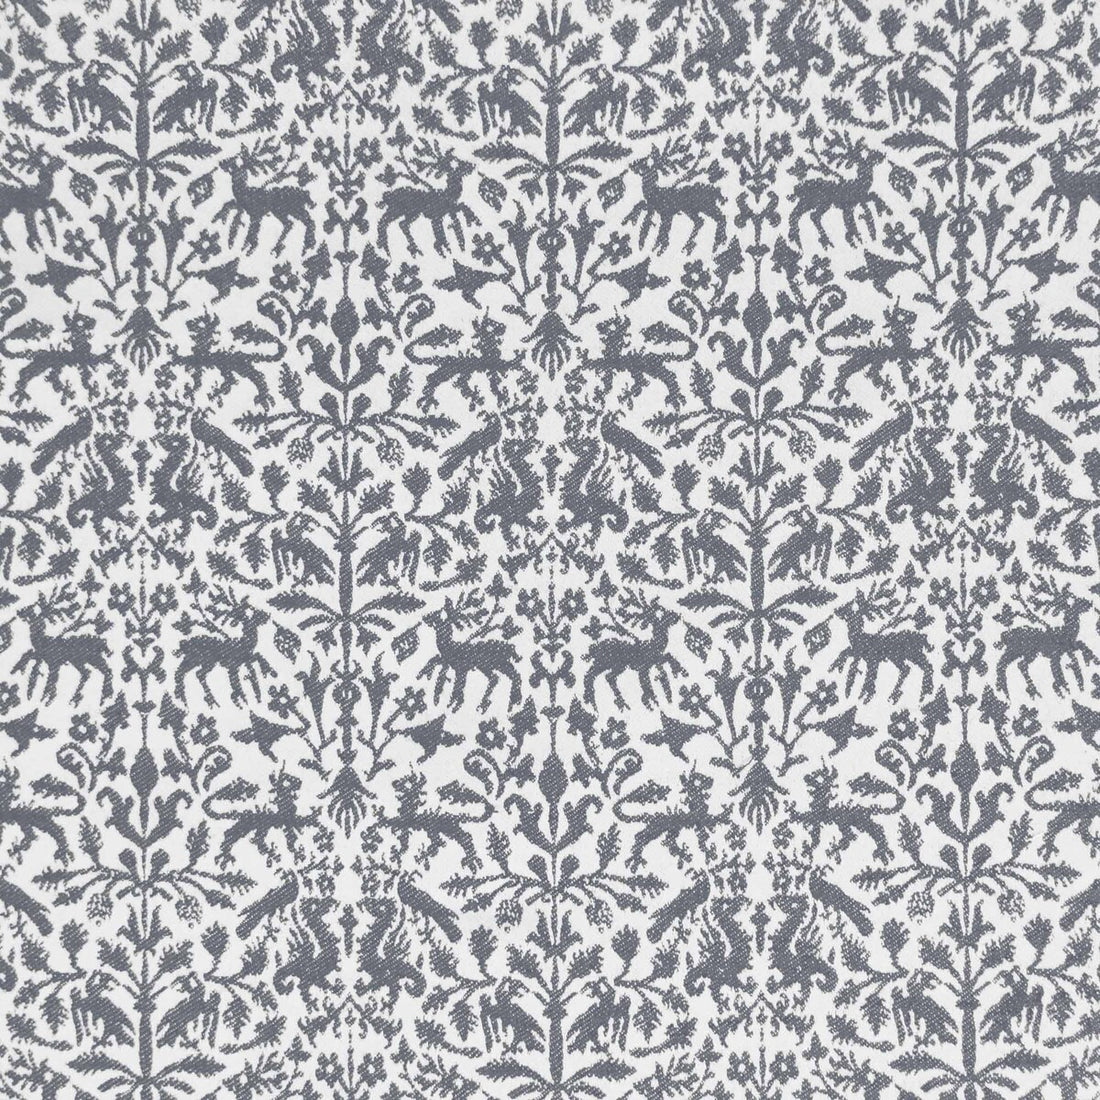 Augusta Emerita fabric in gris color - pattern LCT1112.004.0 - by Gaston y Daniela in the Lorenzo Castillo IX Hesperia collection